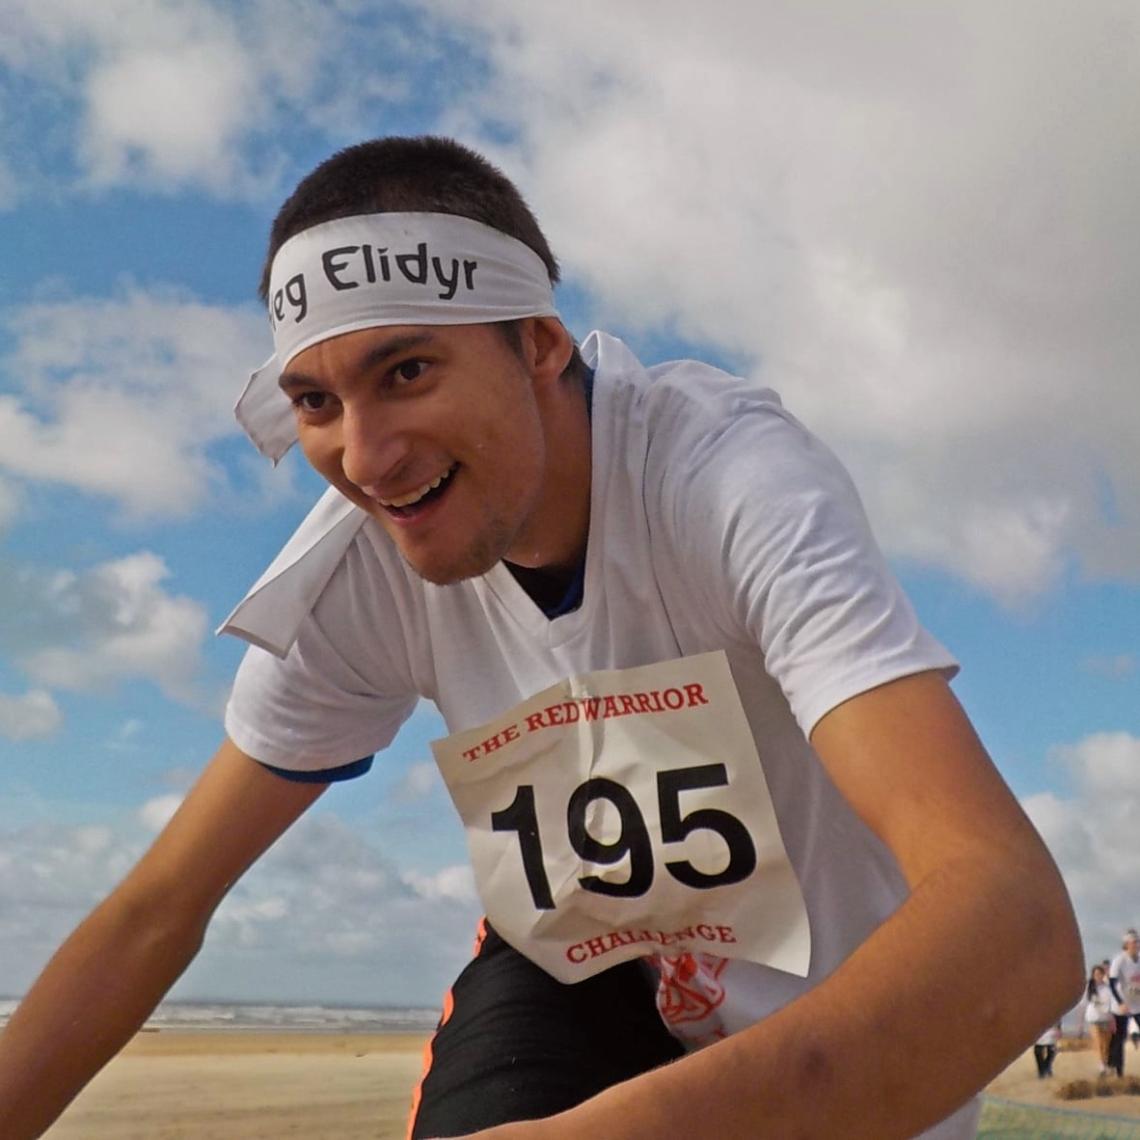 Boy running in a race on a beach in Elidyr headband.